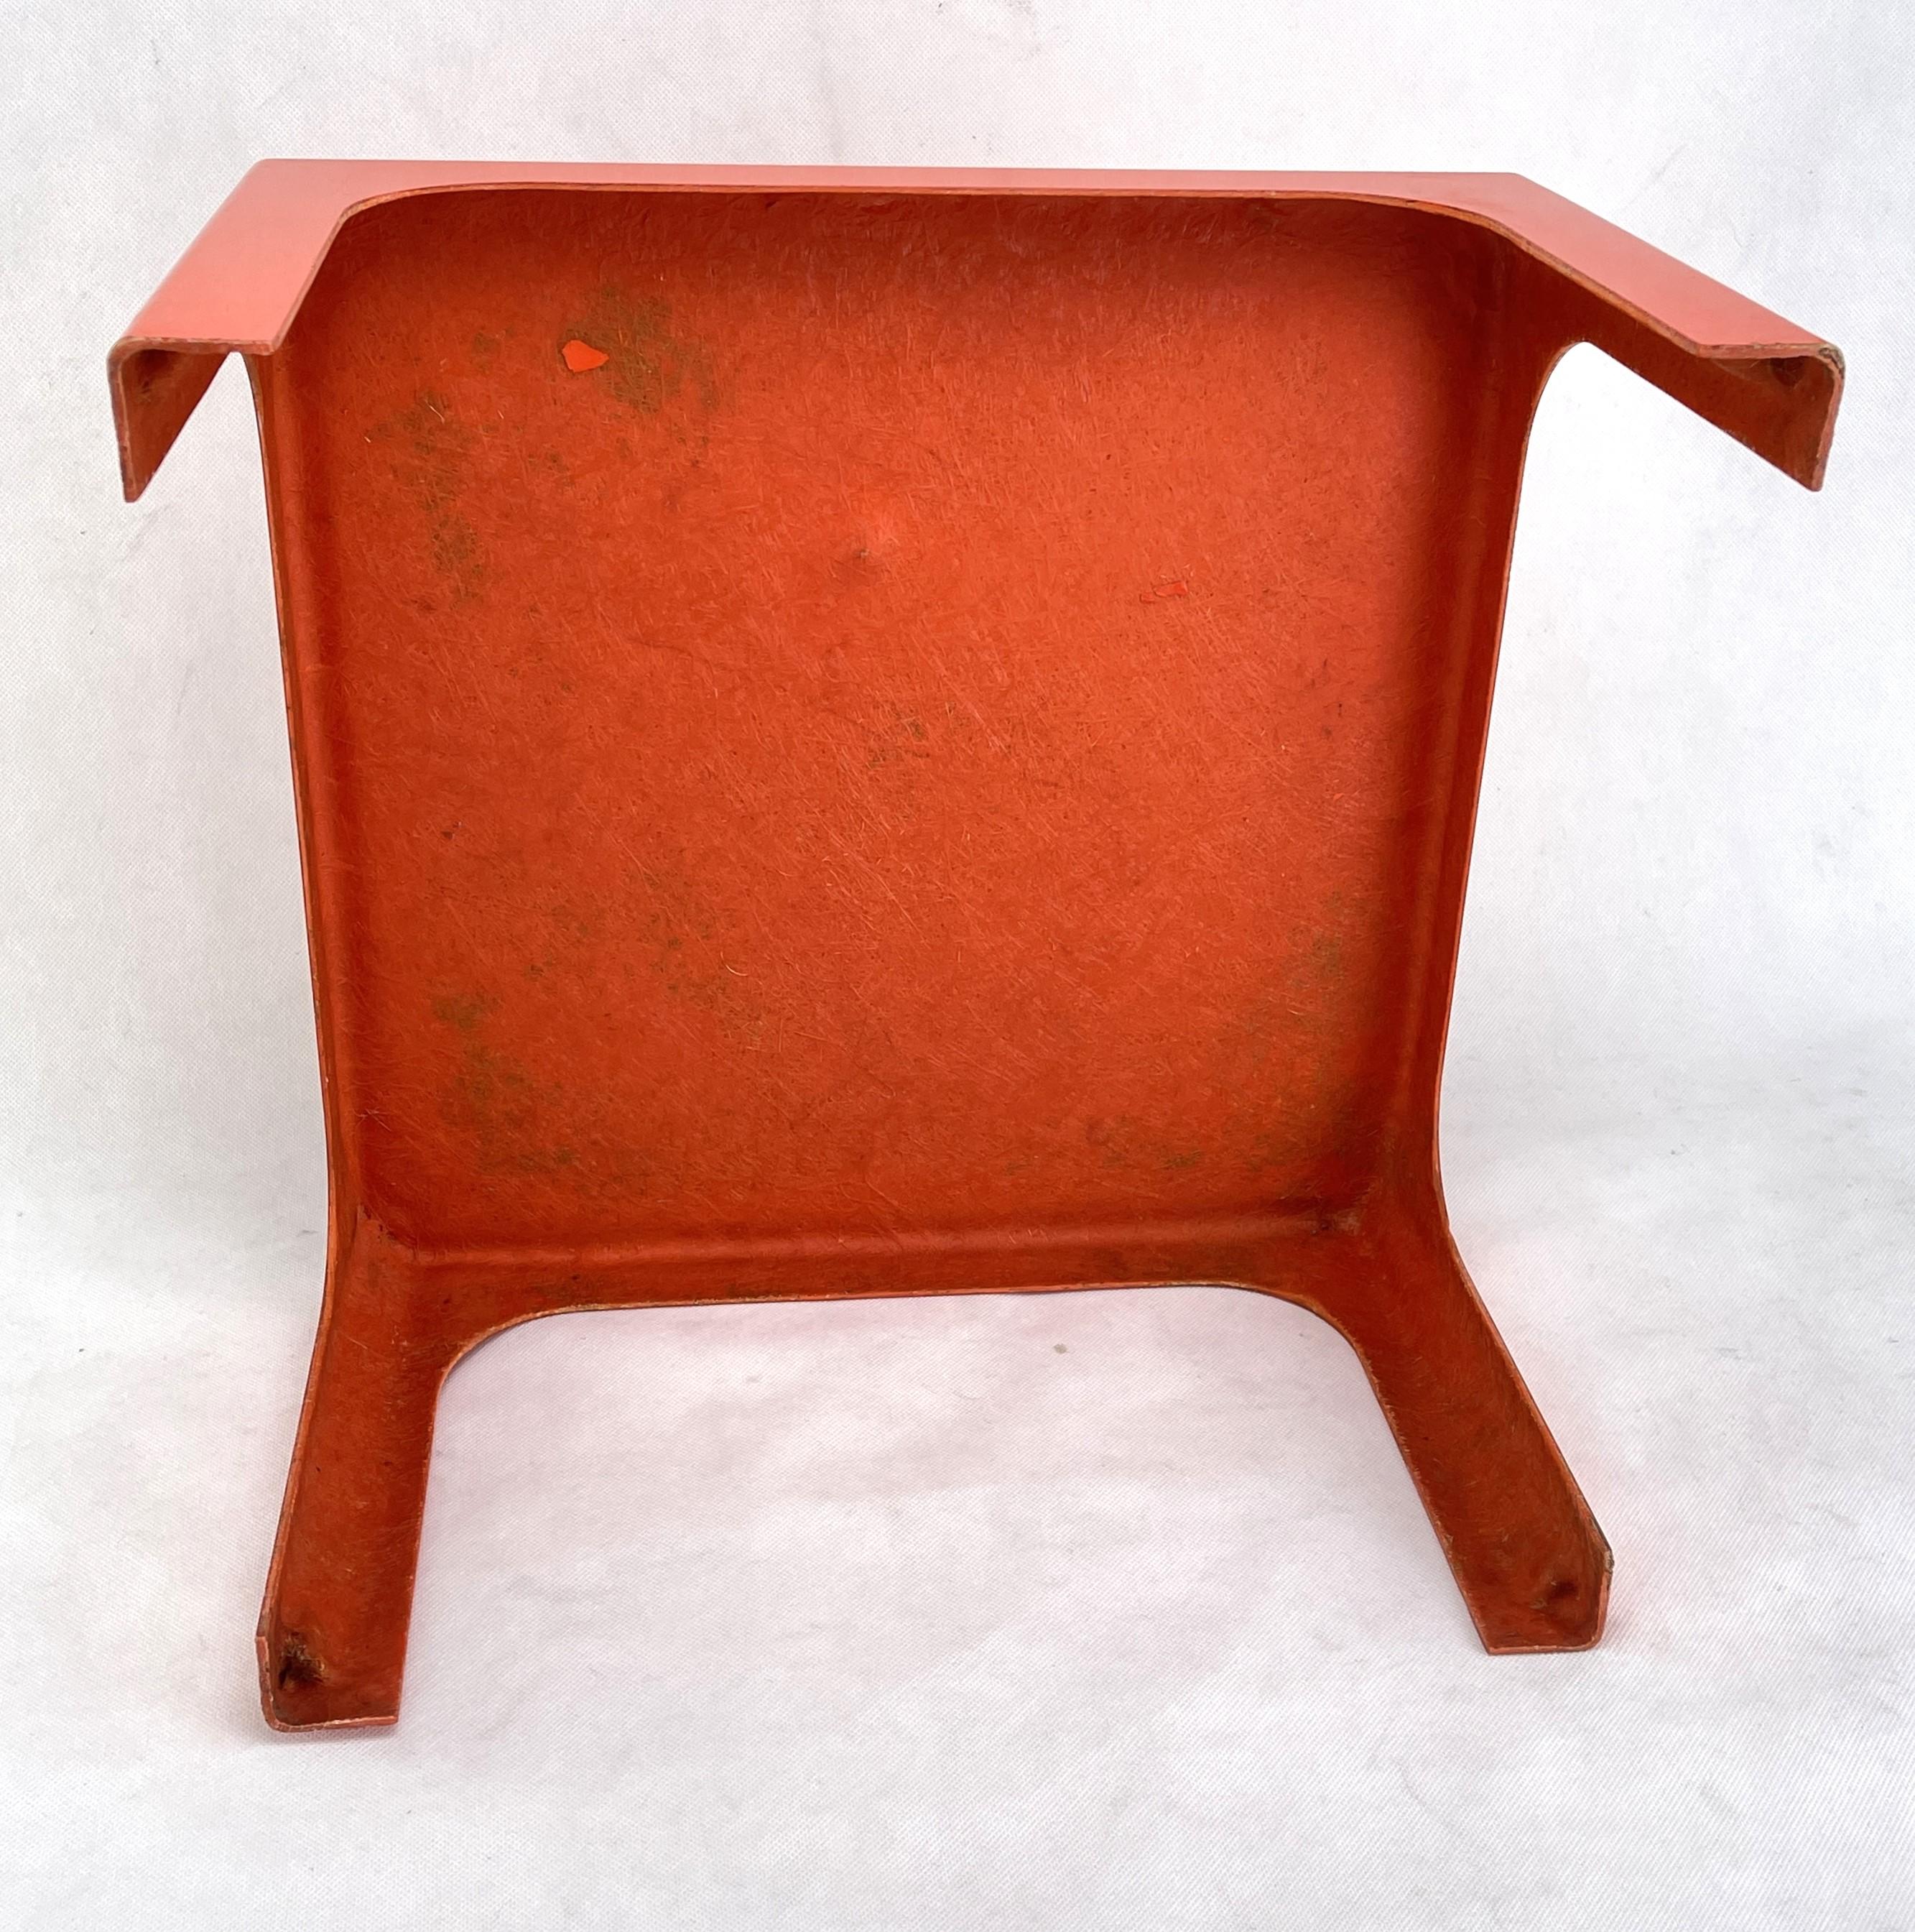 Quadratischer Beistelltisch aus Fiberglas in Orange, 1970er Jahre

Der Tisch hat eine einfache, elegante und moderne Form. Es ist vollständig aus orangefarbenem Glasfasergewebe gefertigt.

Der gereinigte Artikel wiegt 1,75 kg / 3,86 lbs.